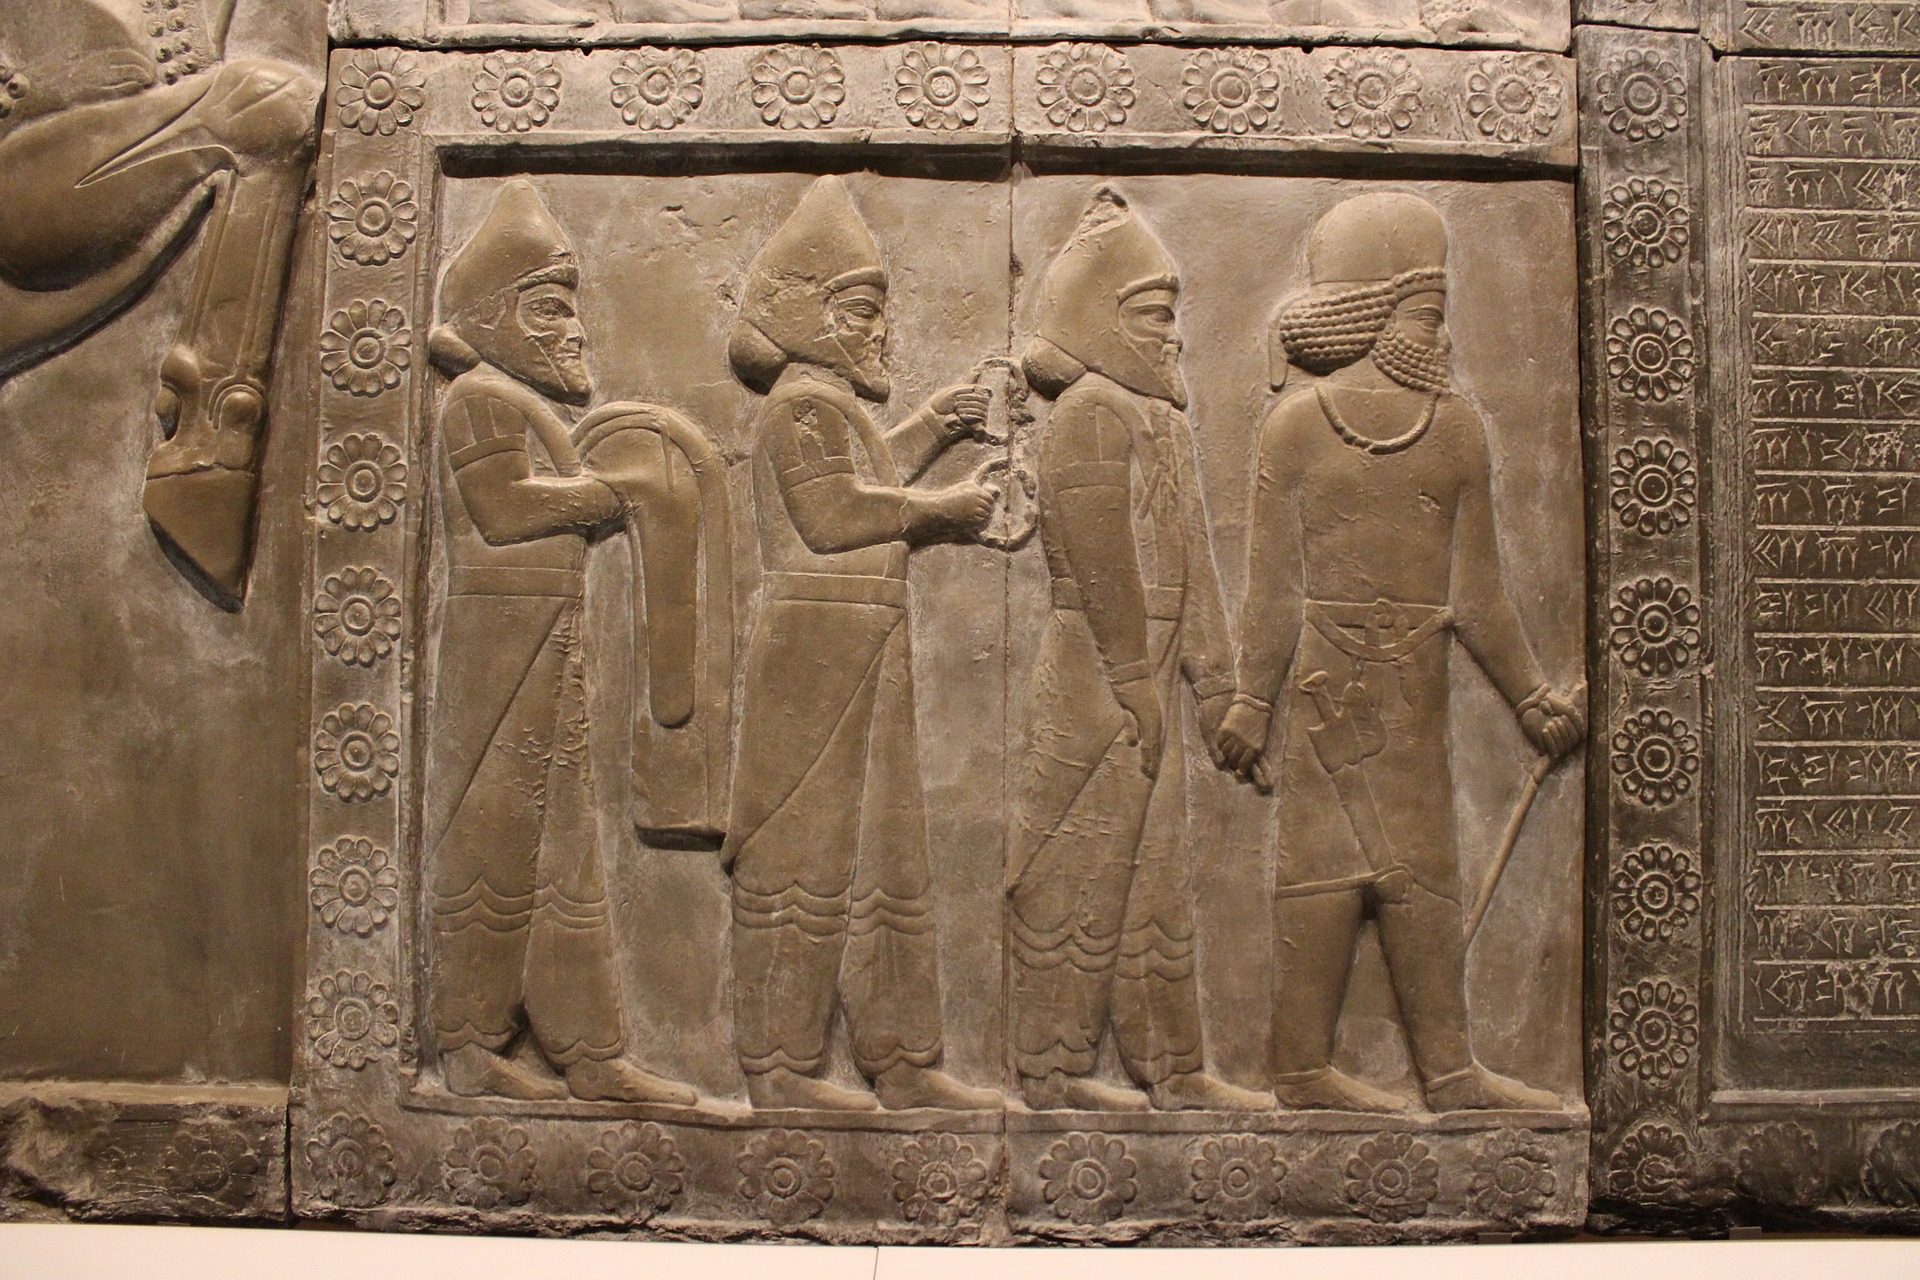 Assyrian art